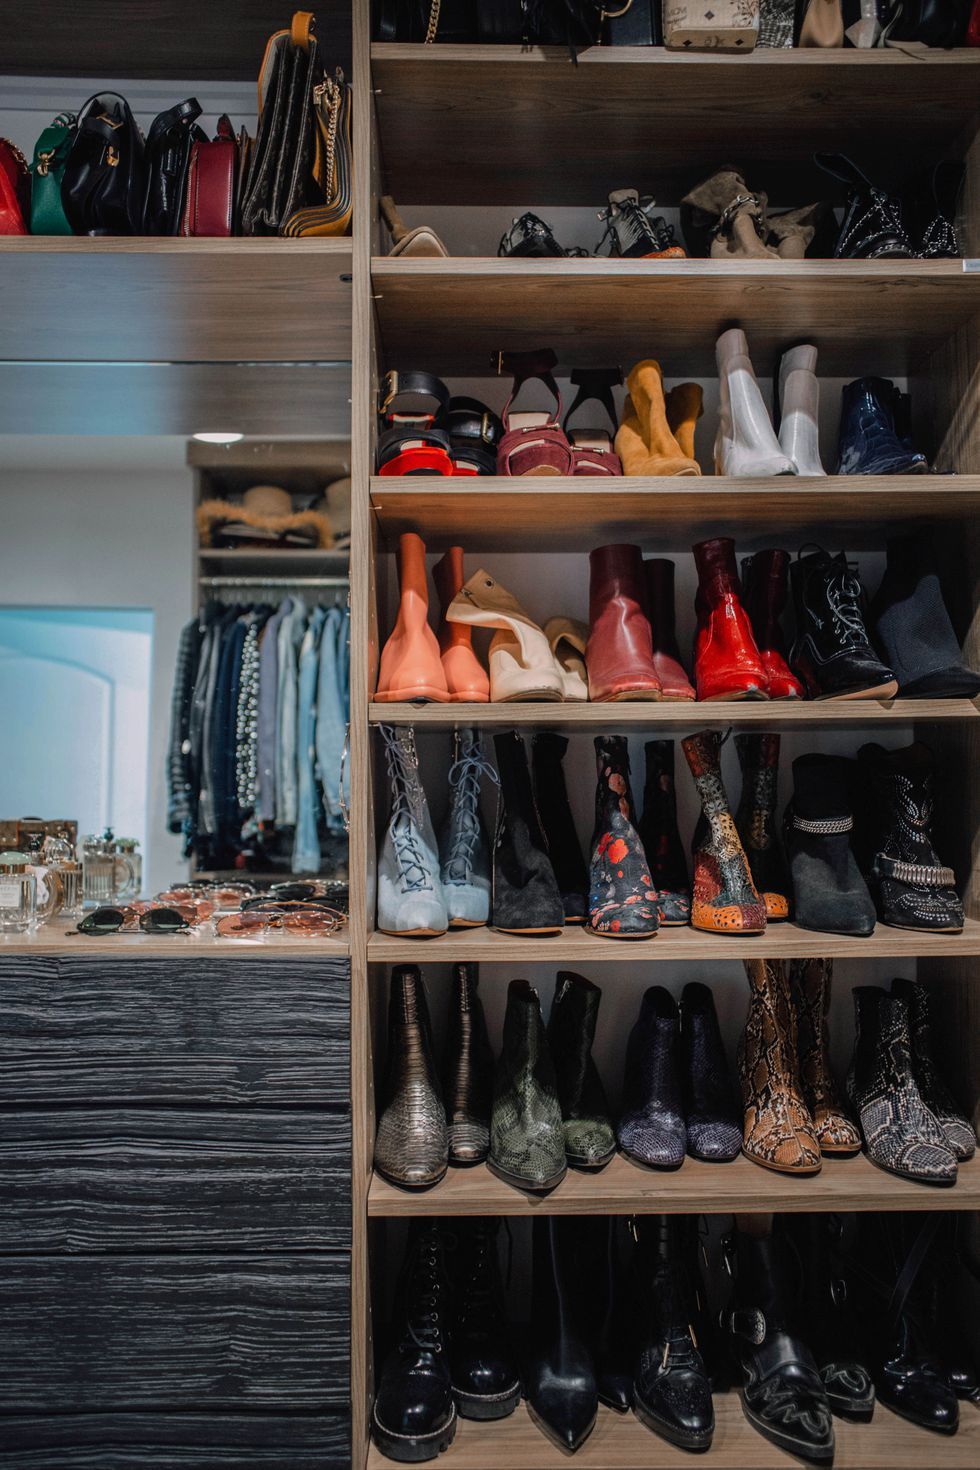 15 Stylish Shoe Storage Ideas - Creative Ways to Store Shoes